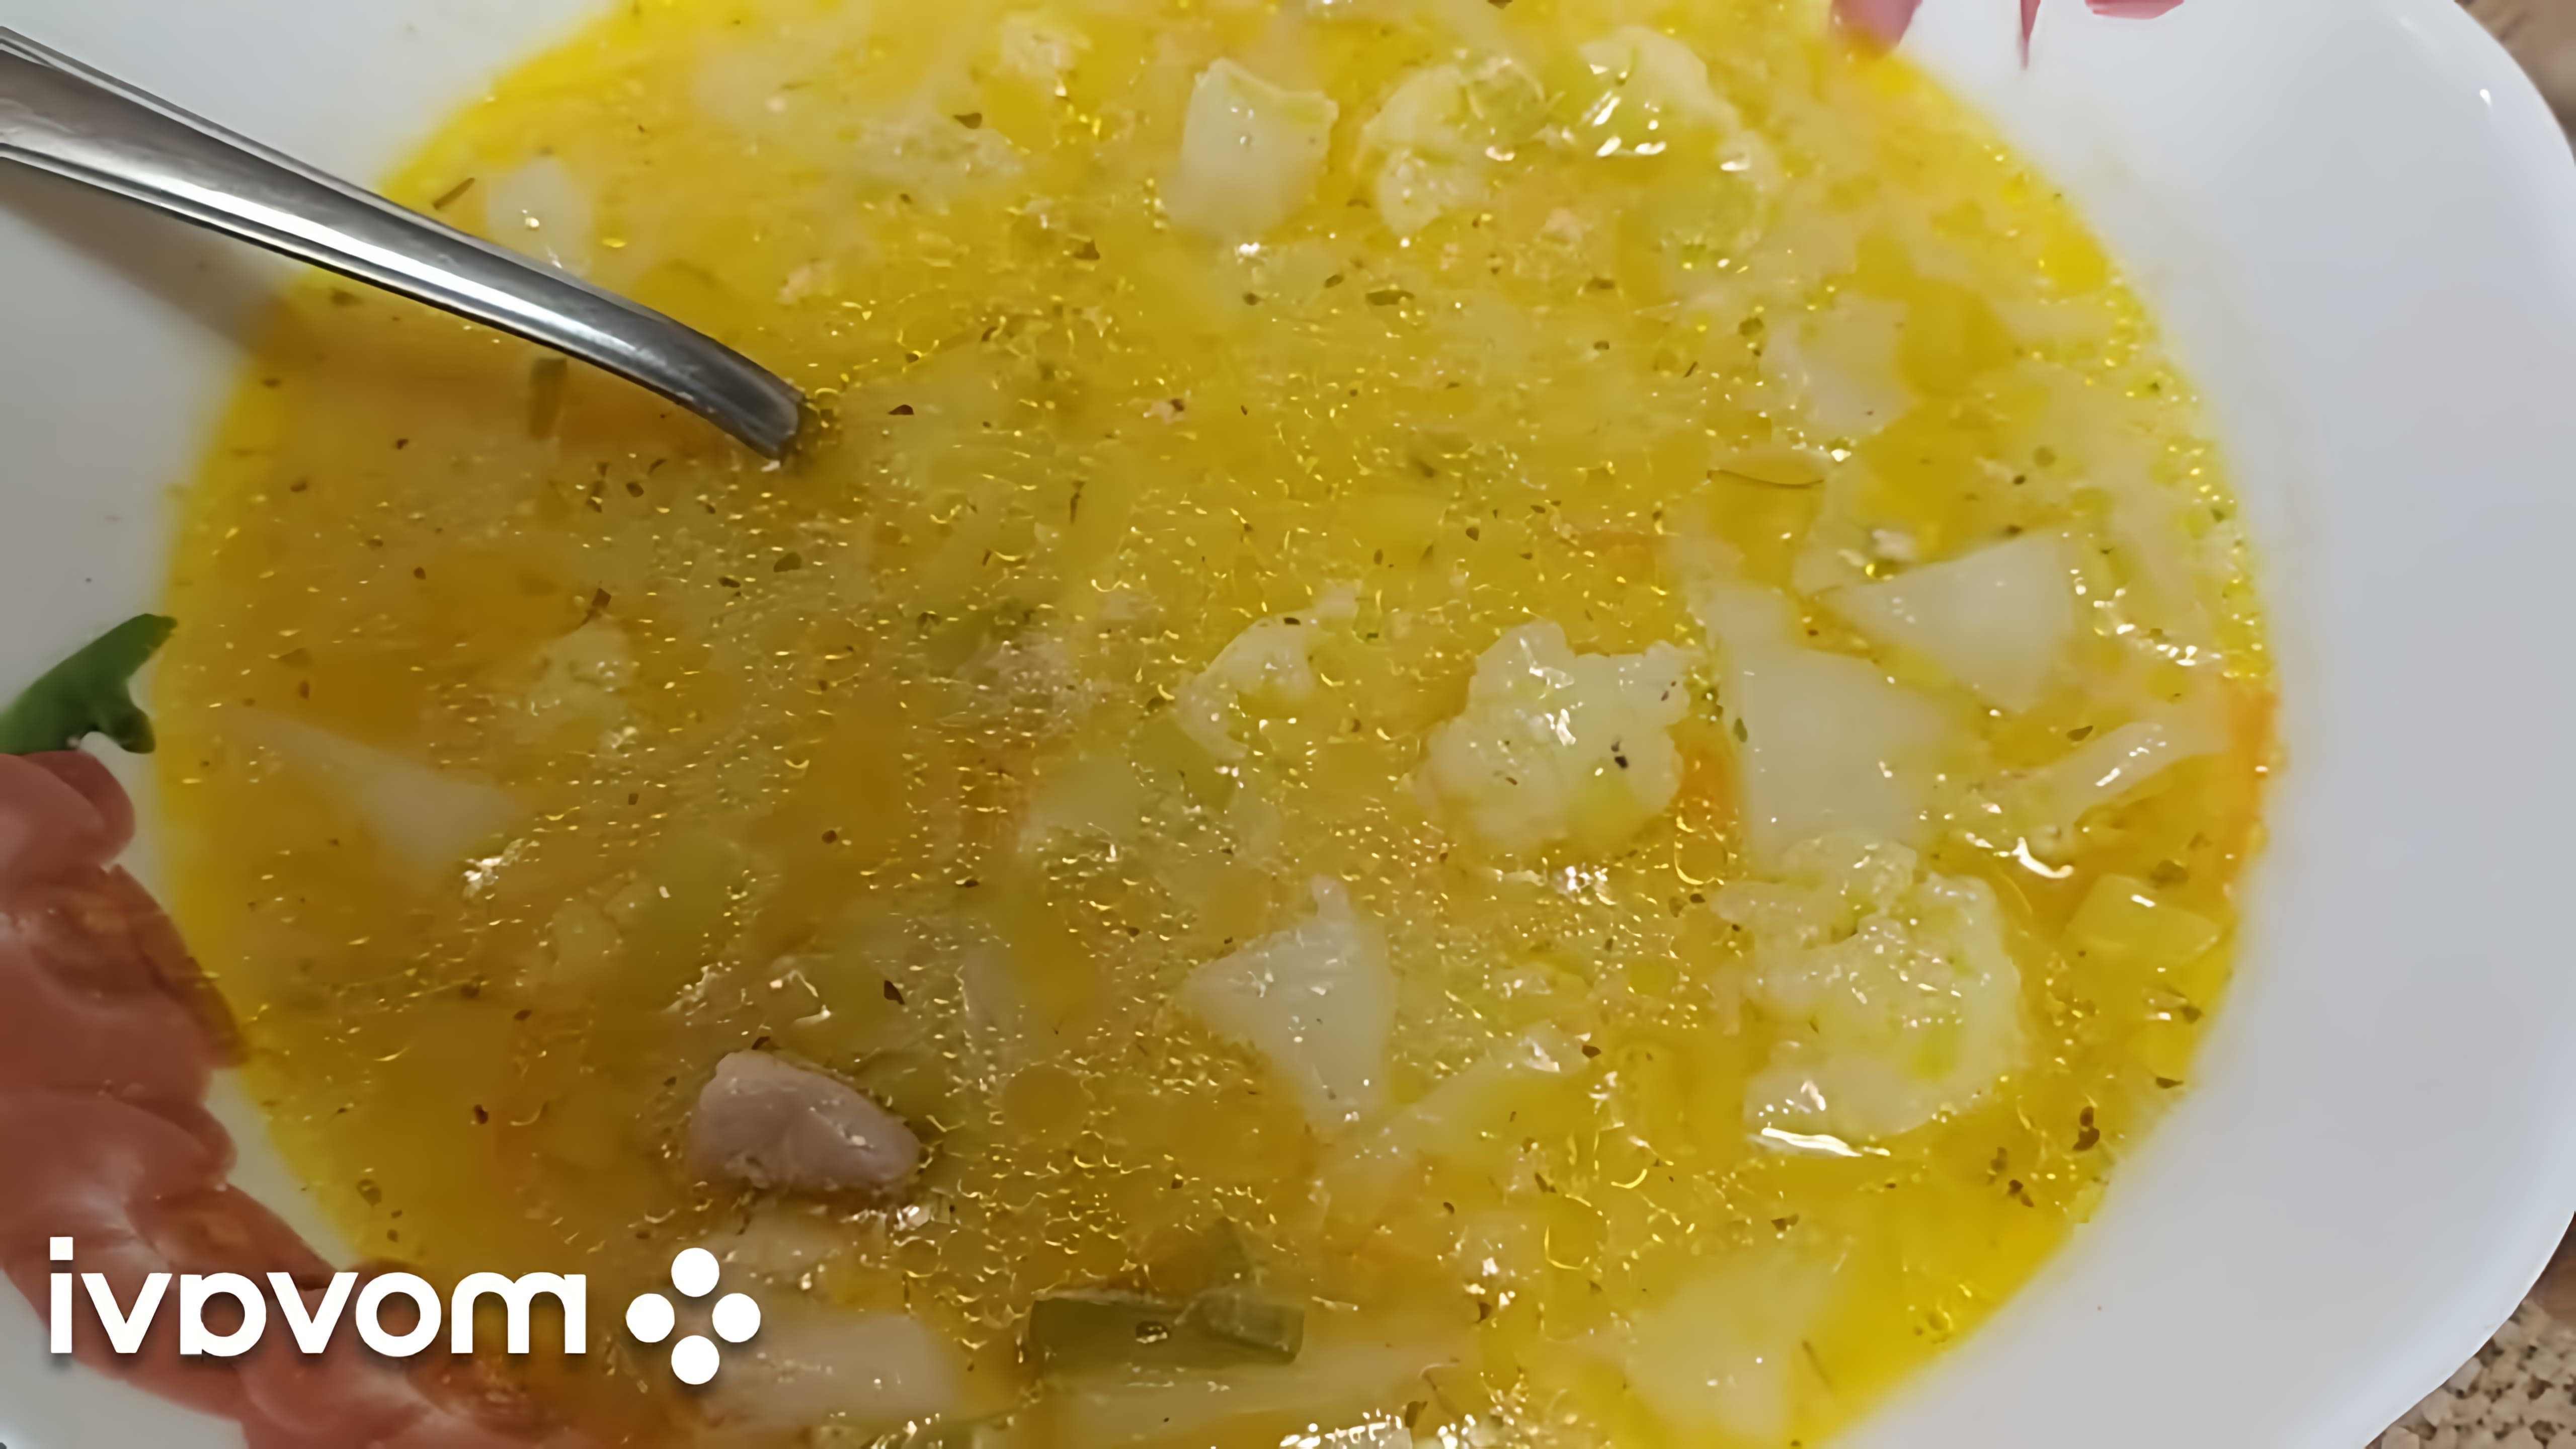 В этом видео демонстрируется процесс приготовления вкусного куриного супа с луком порей и цветной капустой